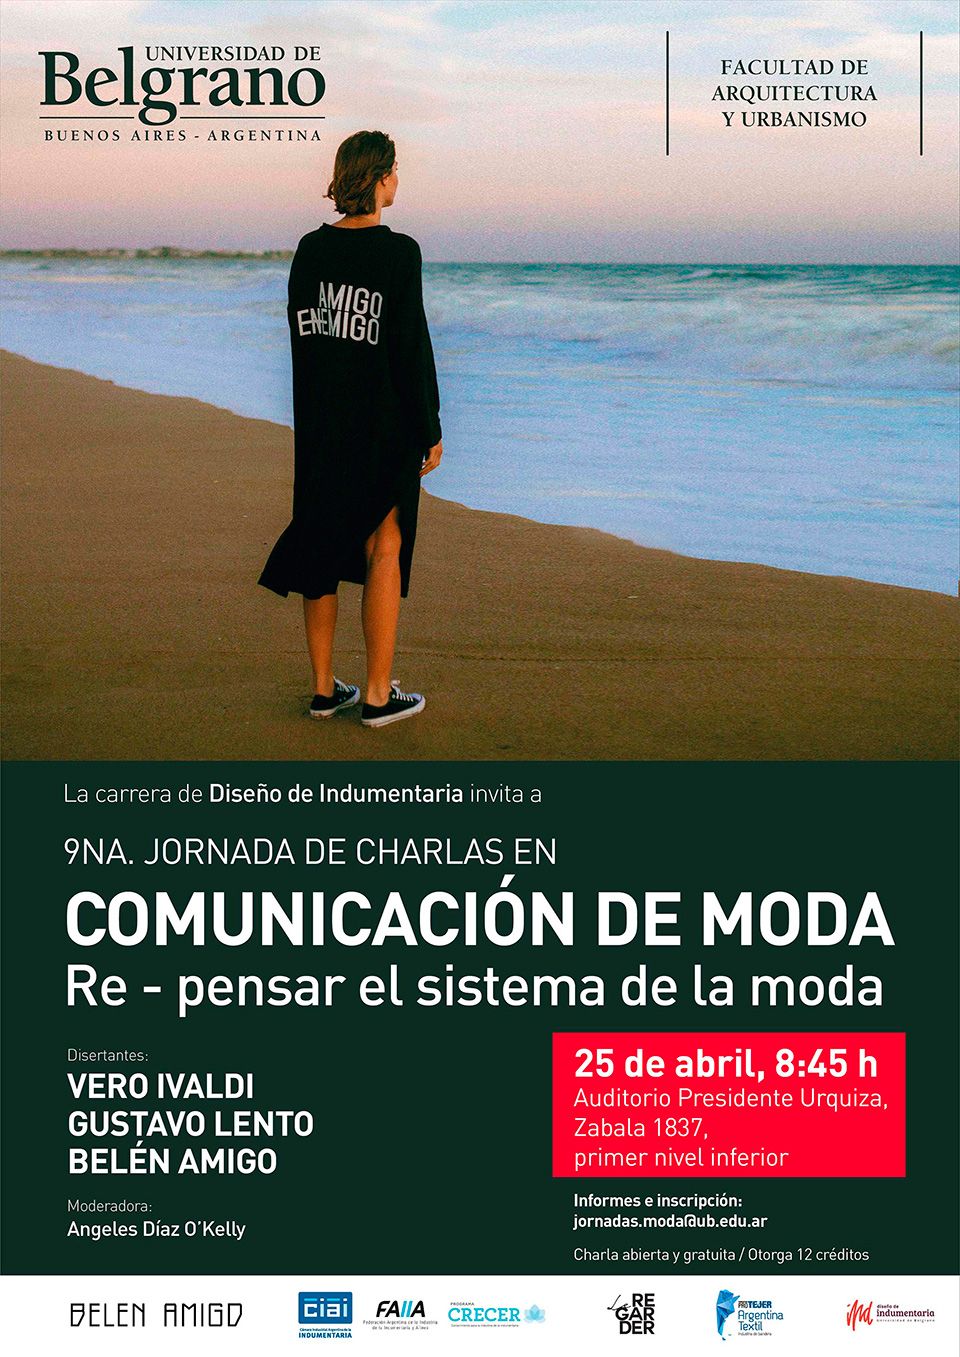 Universidad de Belgrano | Carrera de Diseño de Indumentaria | 9na. Jornada de Charlas en Comunicación de Moda